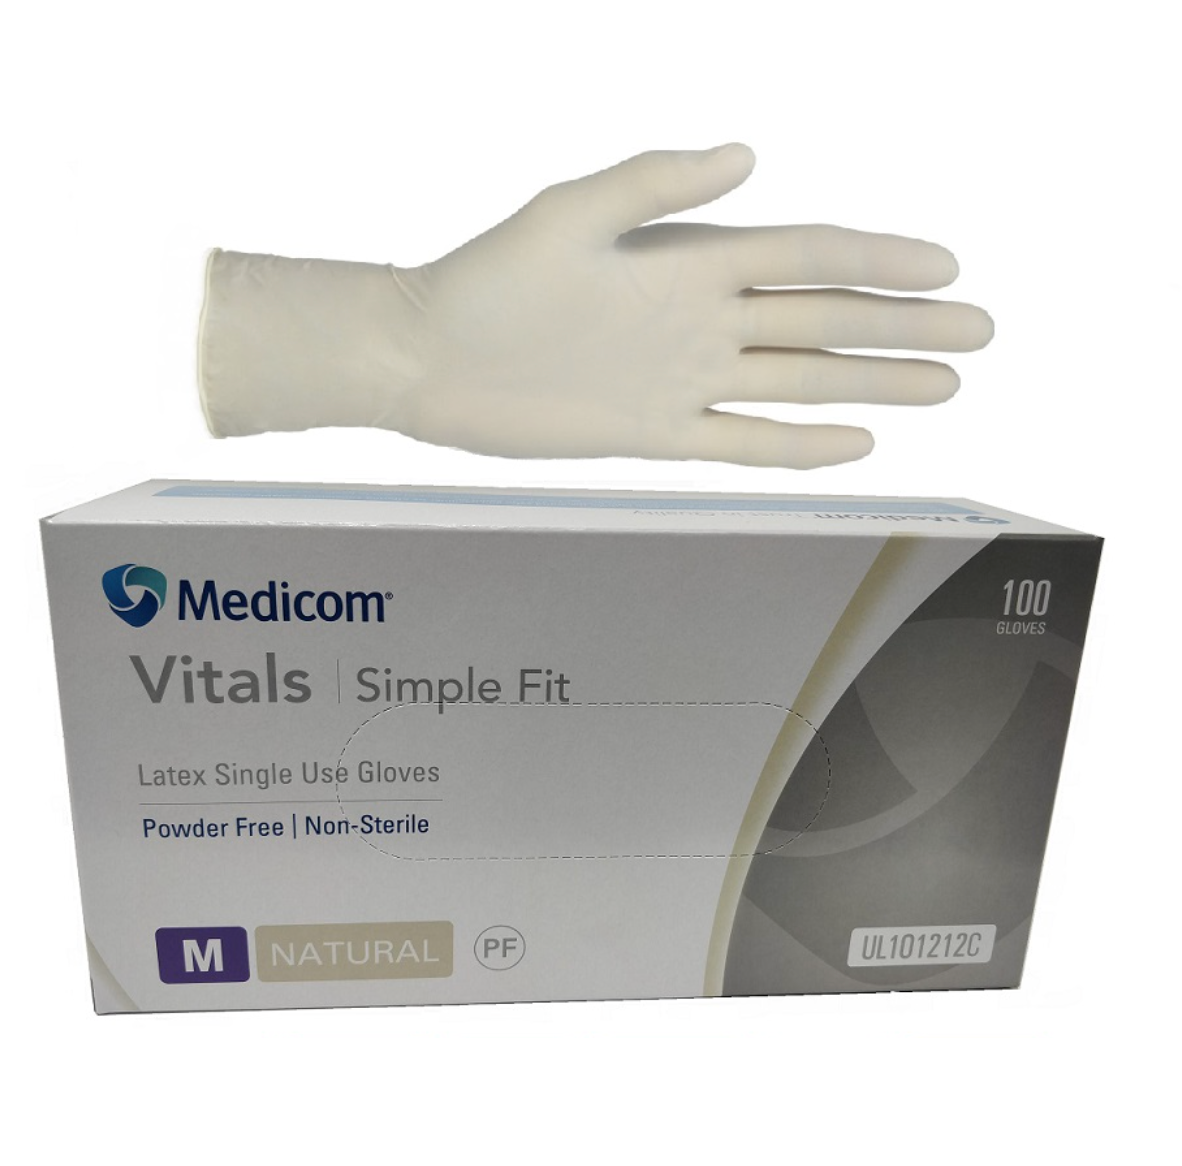 Medicom Vitals Latex Powder Free Gloves 100pk - Medium